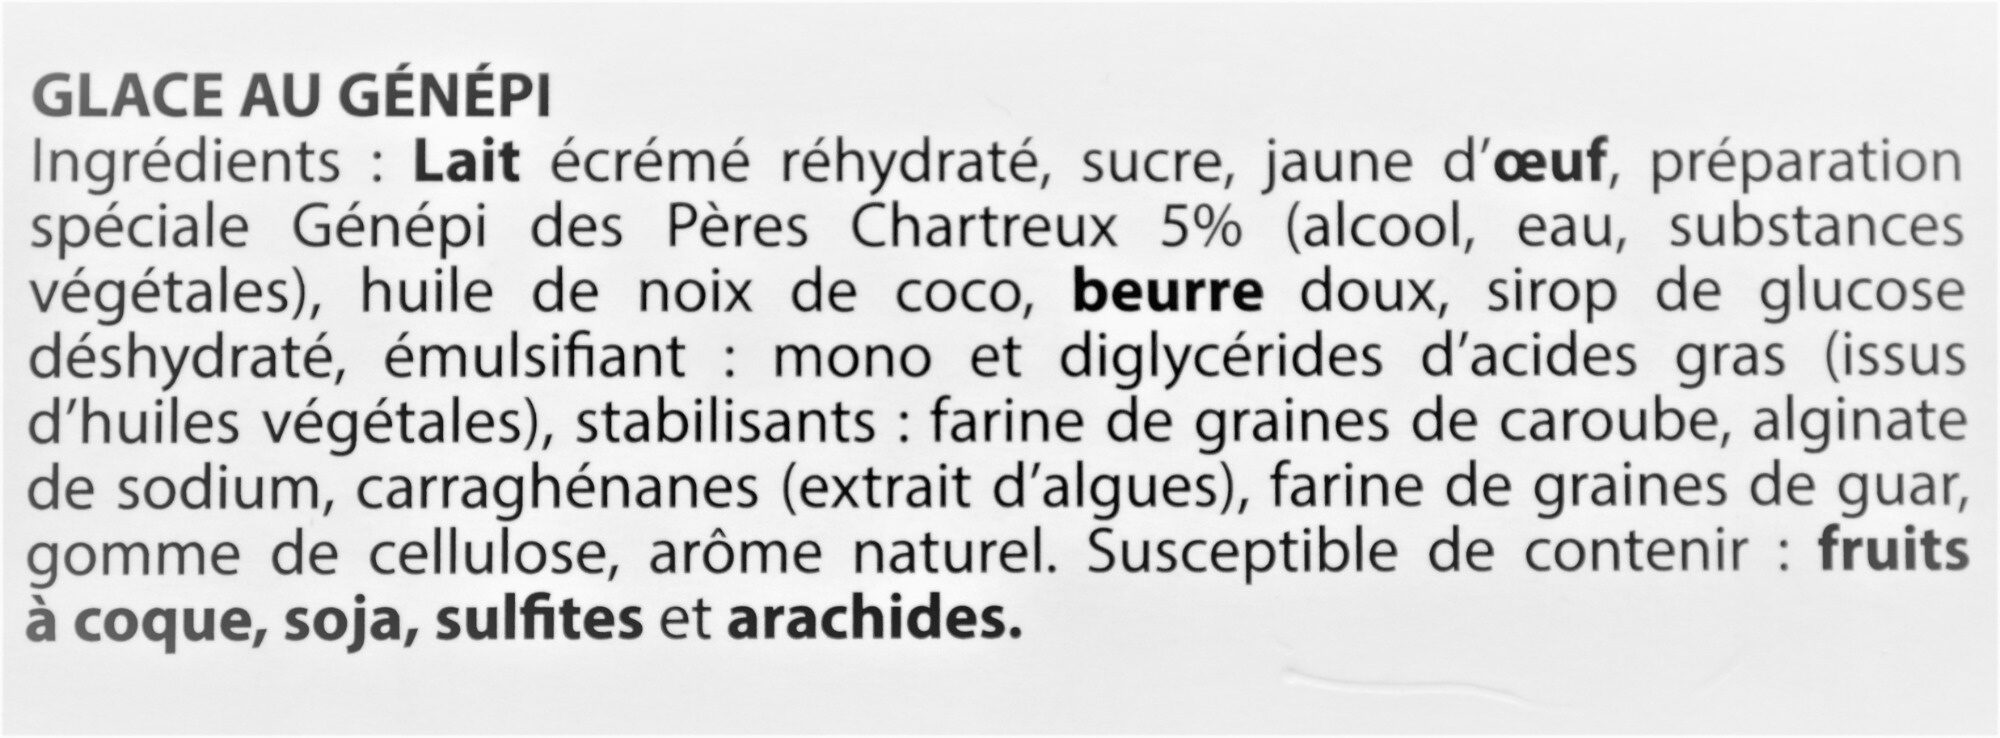 Glace GENEPI, des Pères Chartreux - Ingredients - fr